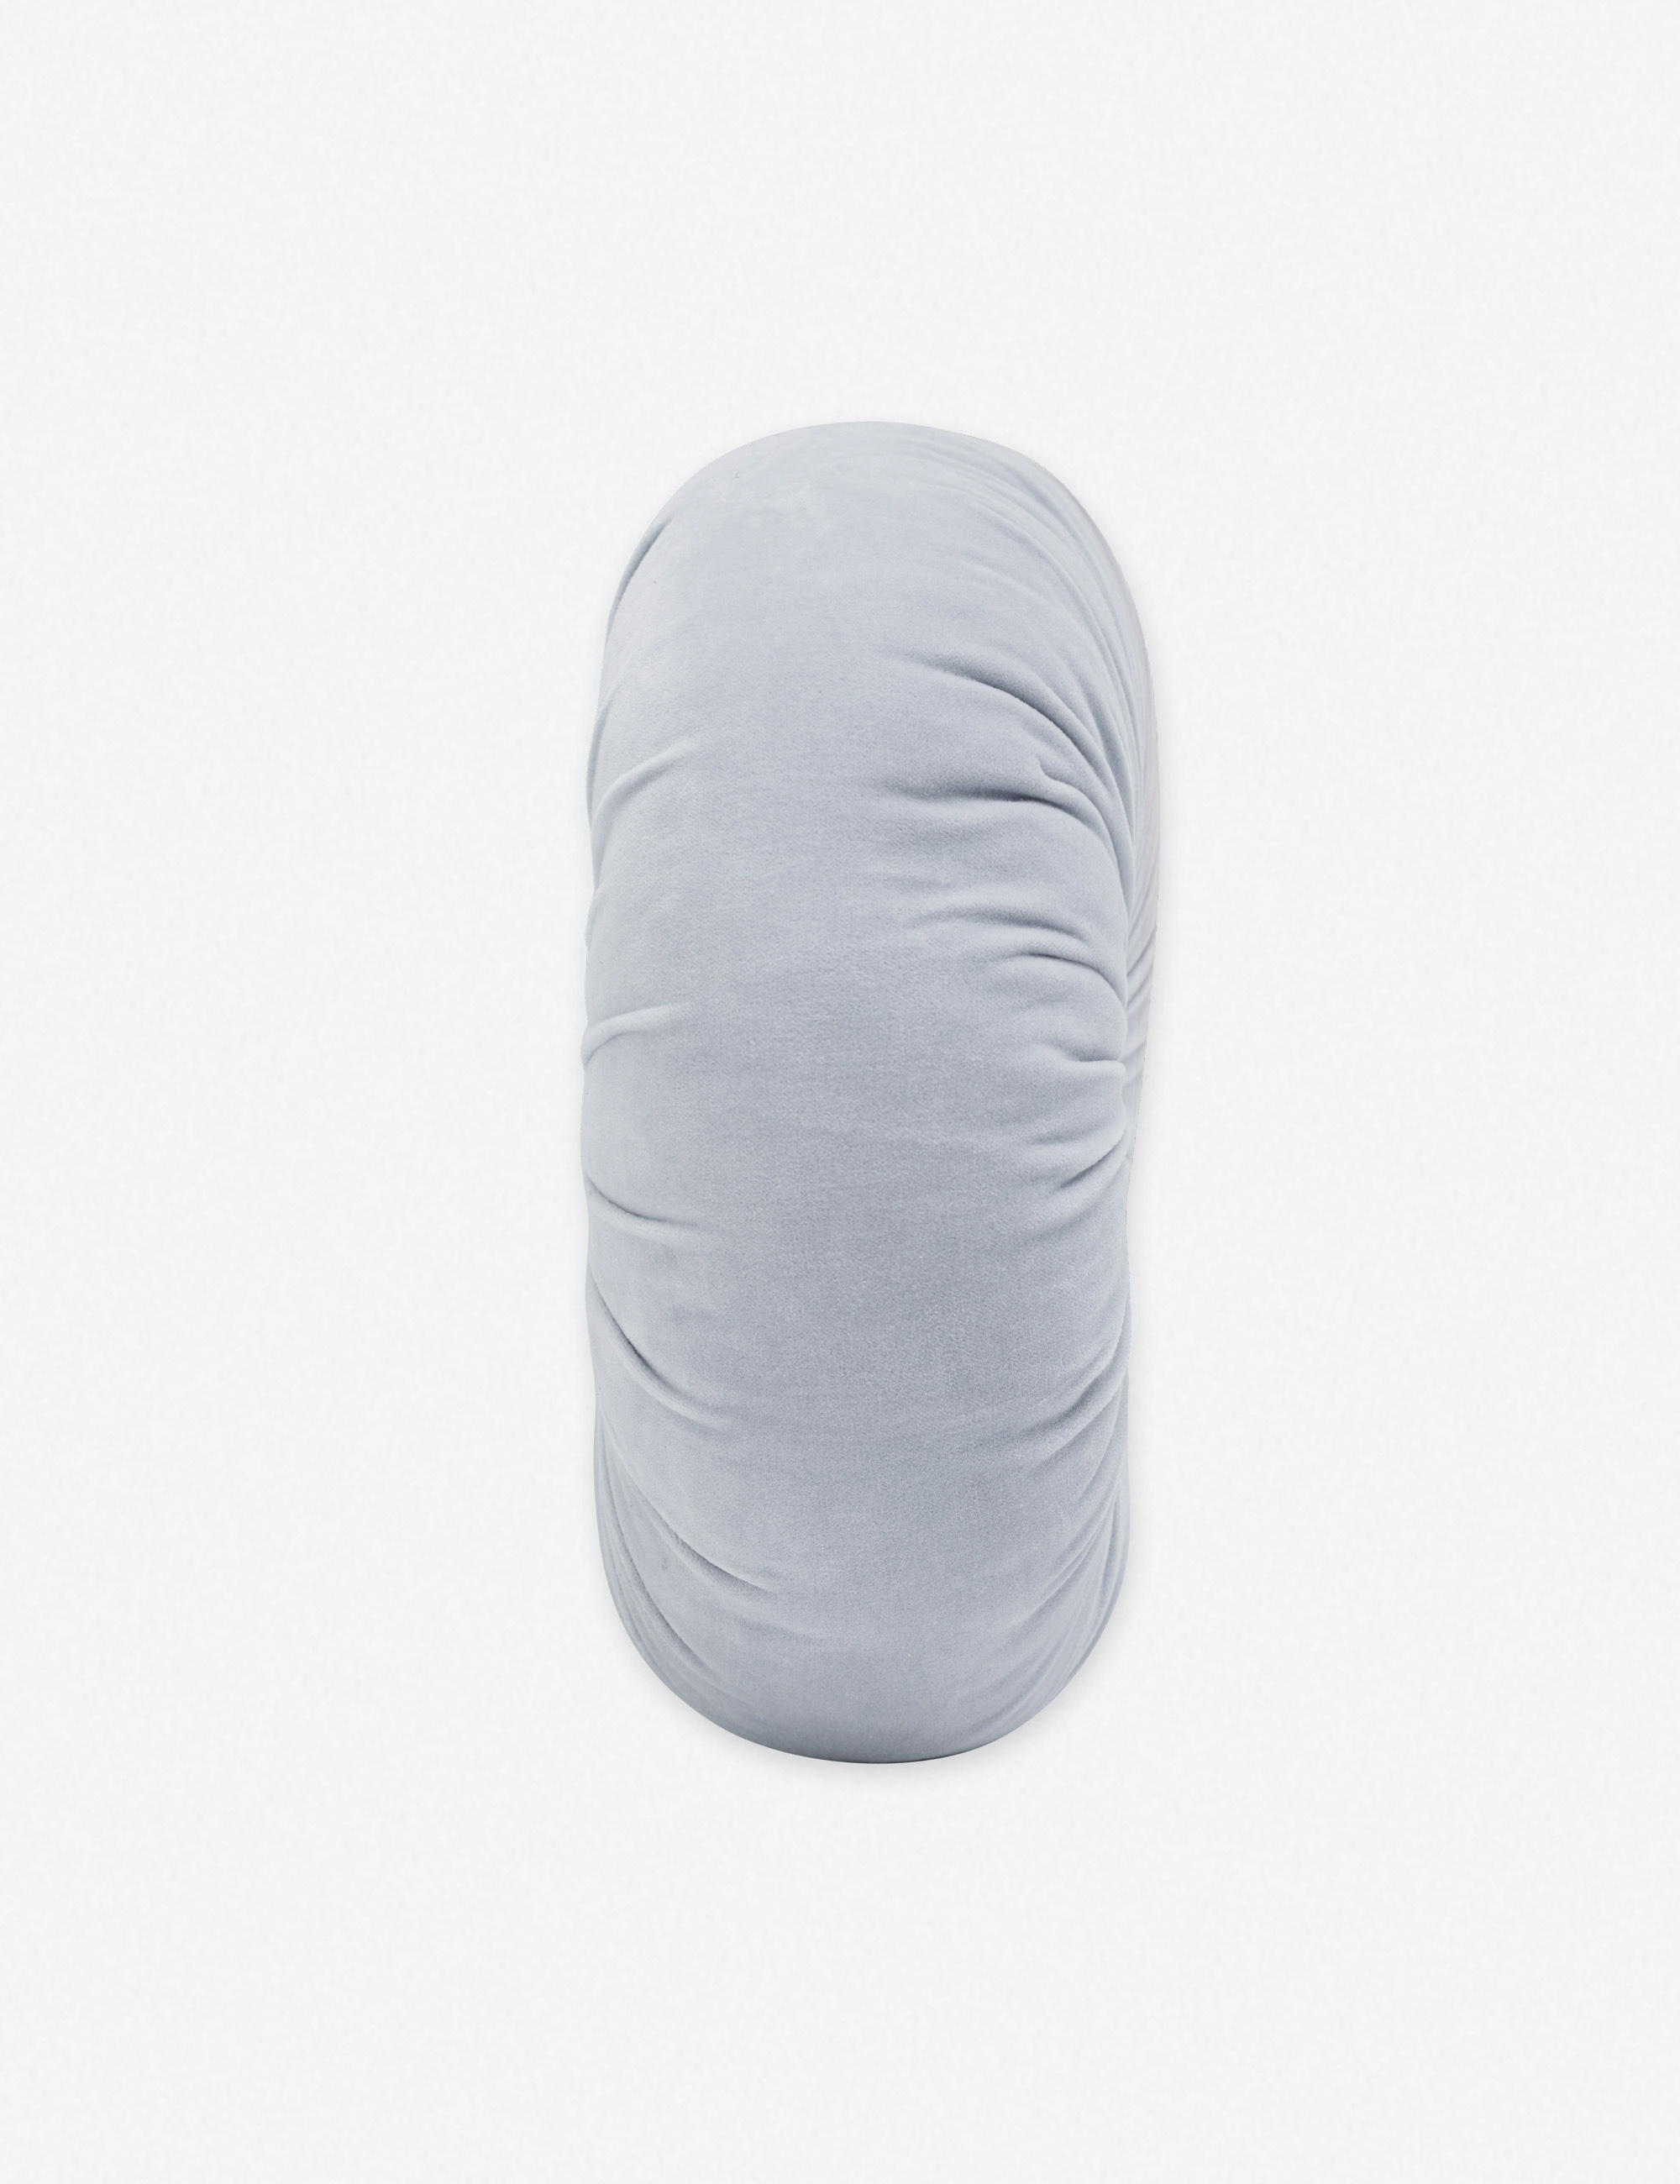 Monroe Velvet Round Pillow, Ice Blue - Image 2